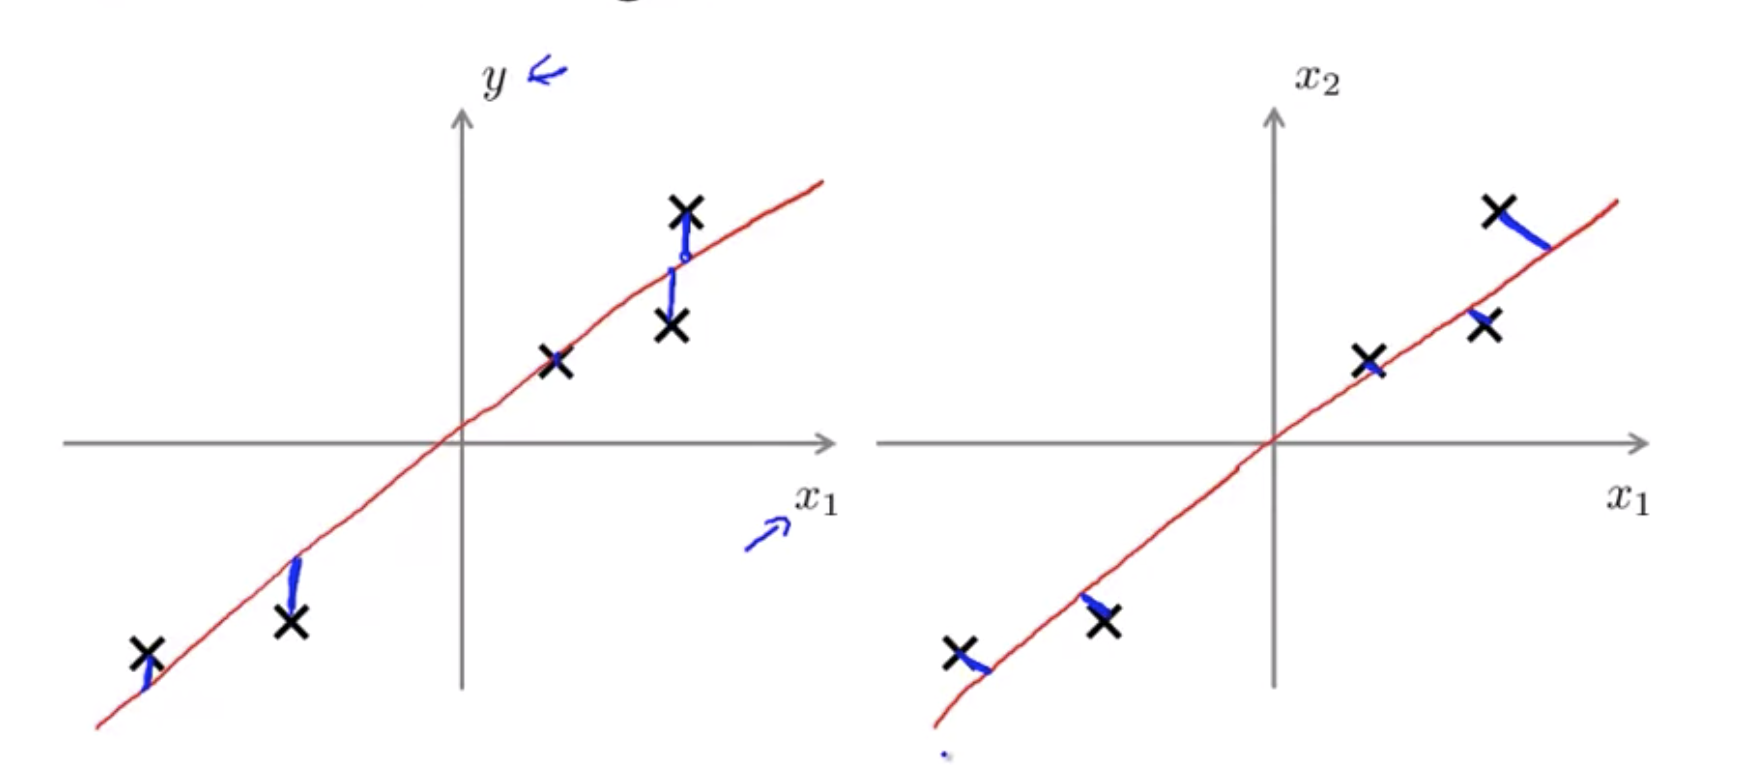 pca-vs-linear-regression.png